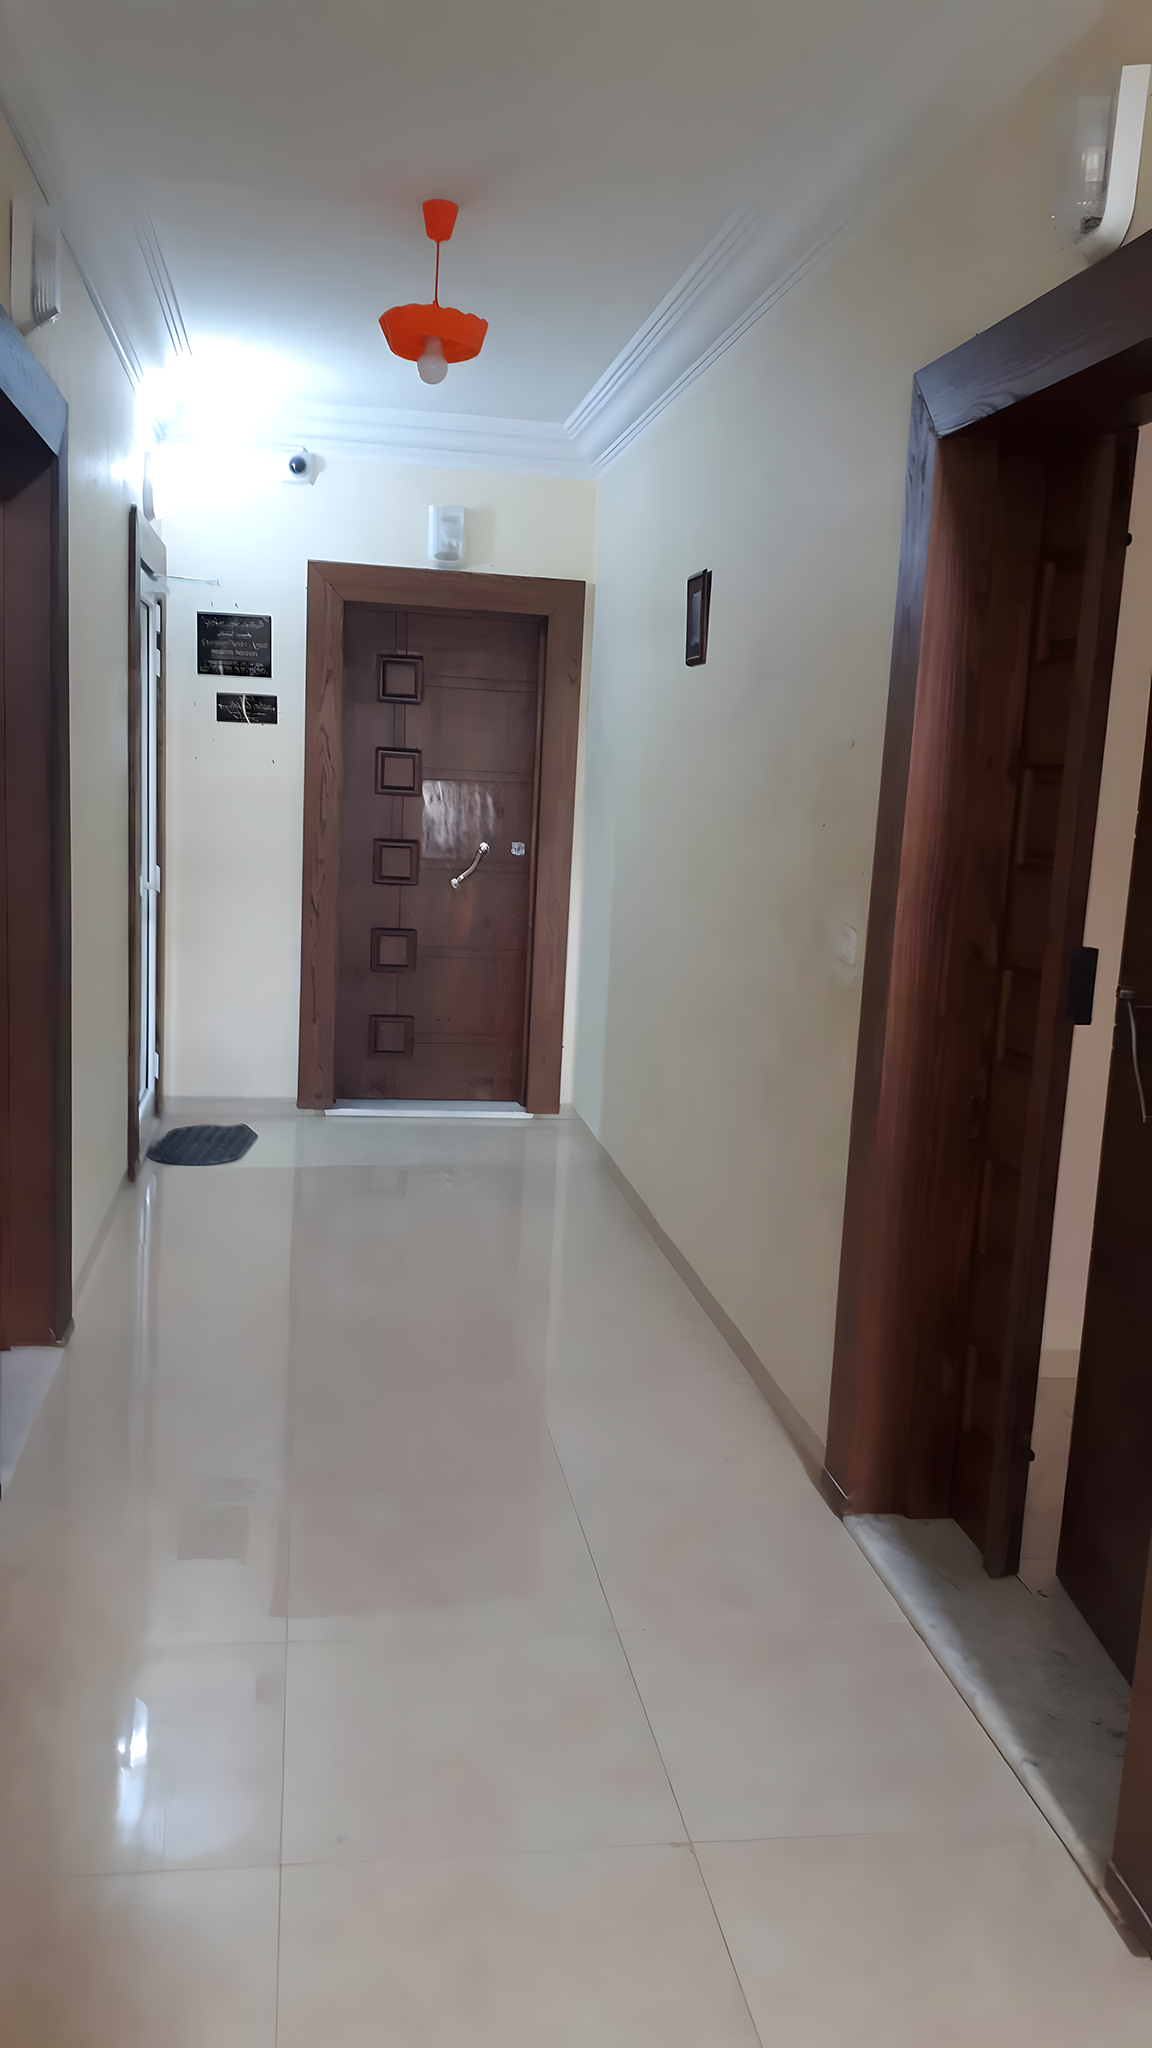 Sousse Riadh Sousse Riadh Vente Appart. 3 pices Appartement au premier etage dun immeuble